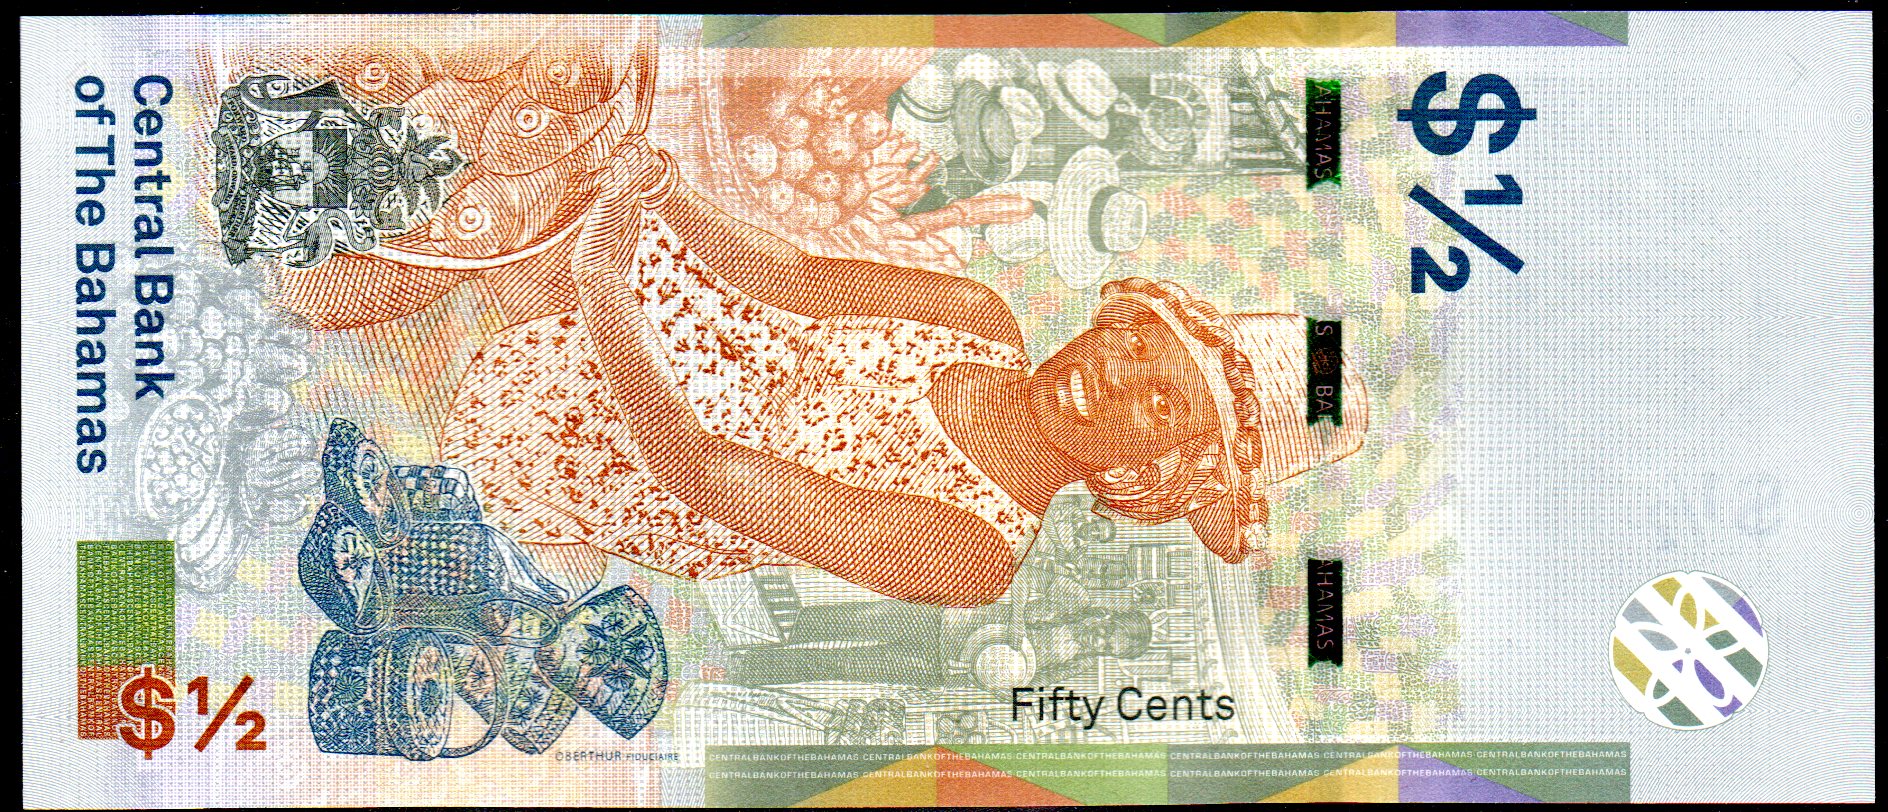 Banknote Bahamas $1/2 Dollar, 2019, Queen Elizabeth II, UNC